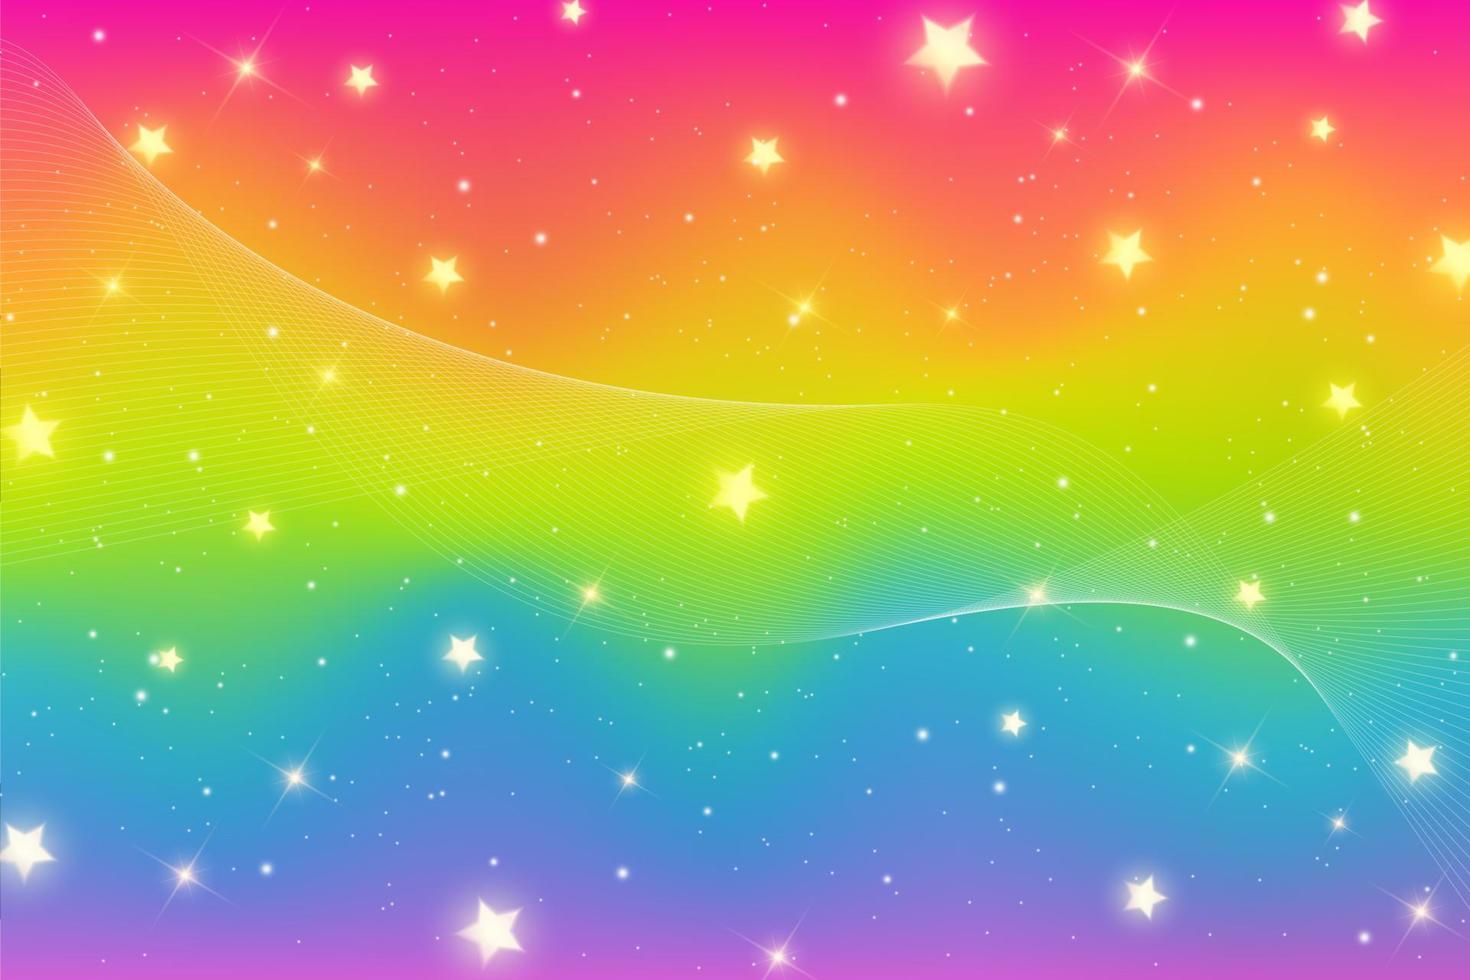 sfondo fantasia arcobaleno. cielo multicolore luminoso con scintillii di stelle e bokeh. illustrazione ondulata olografica. vettore